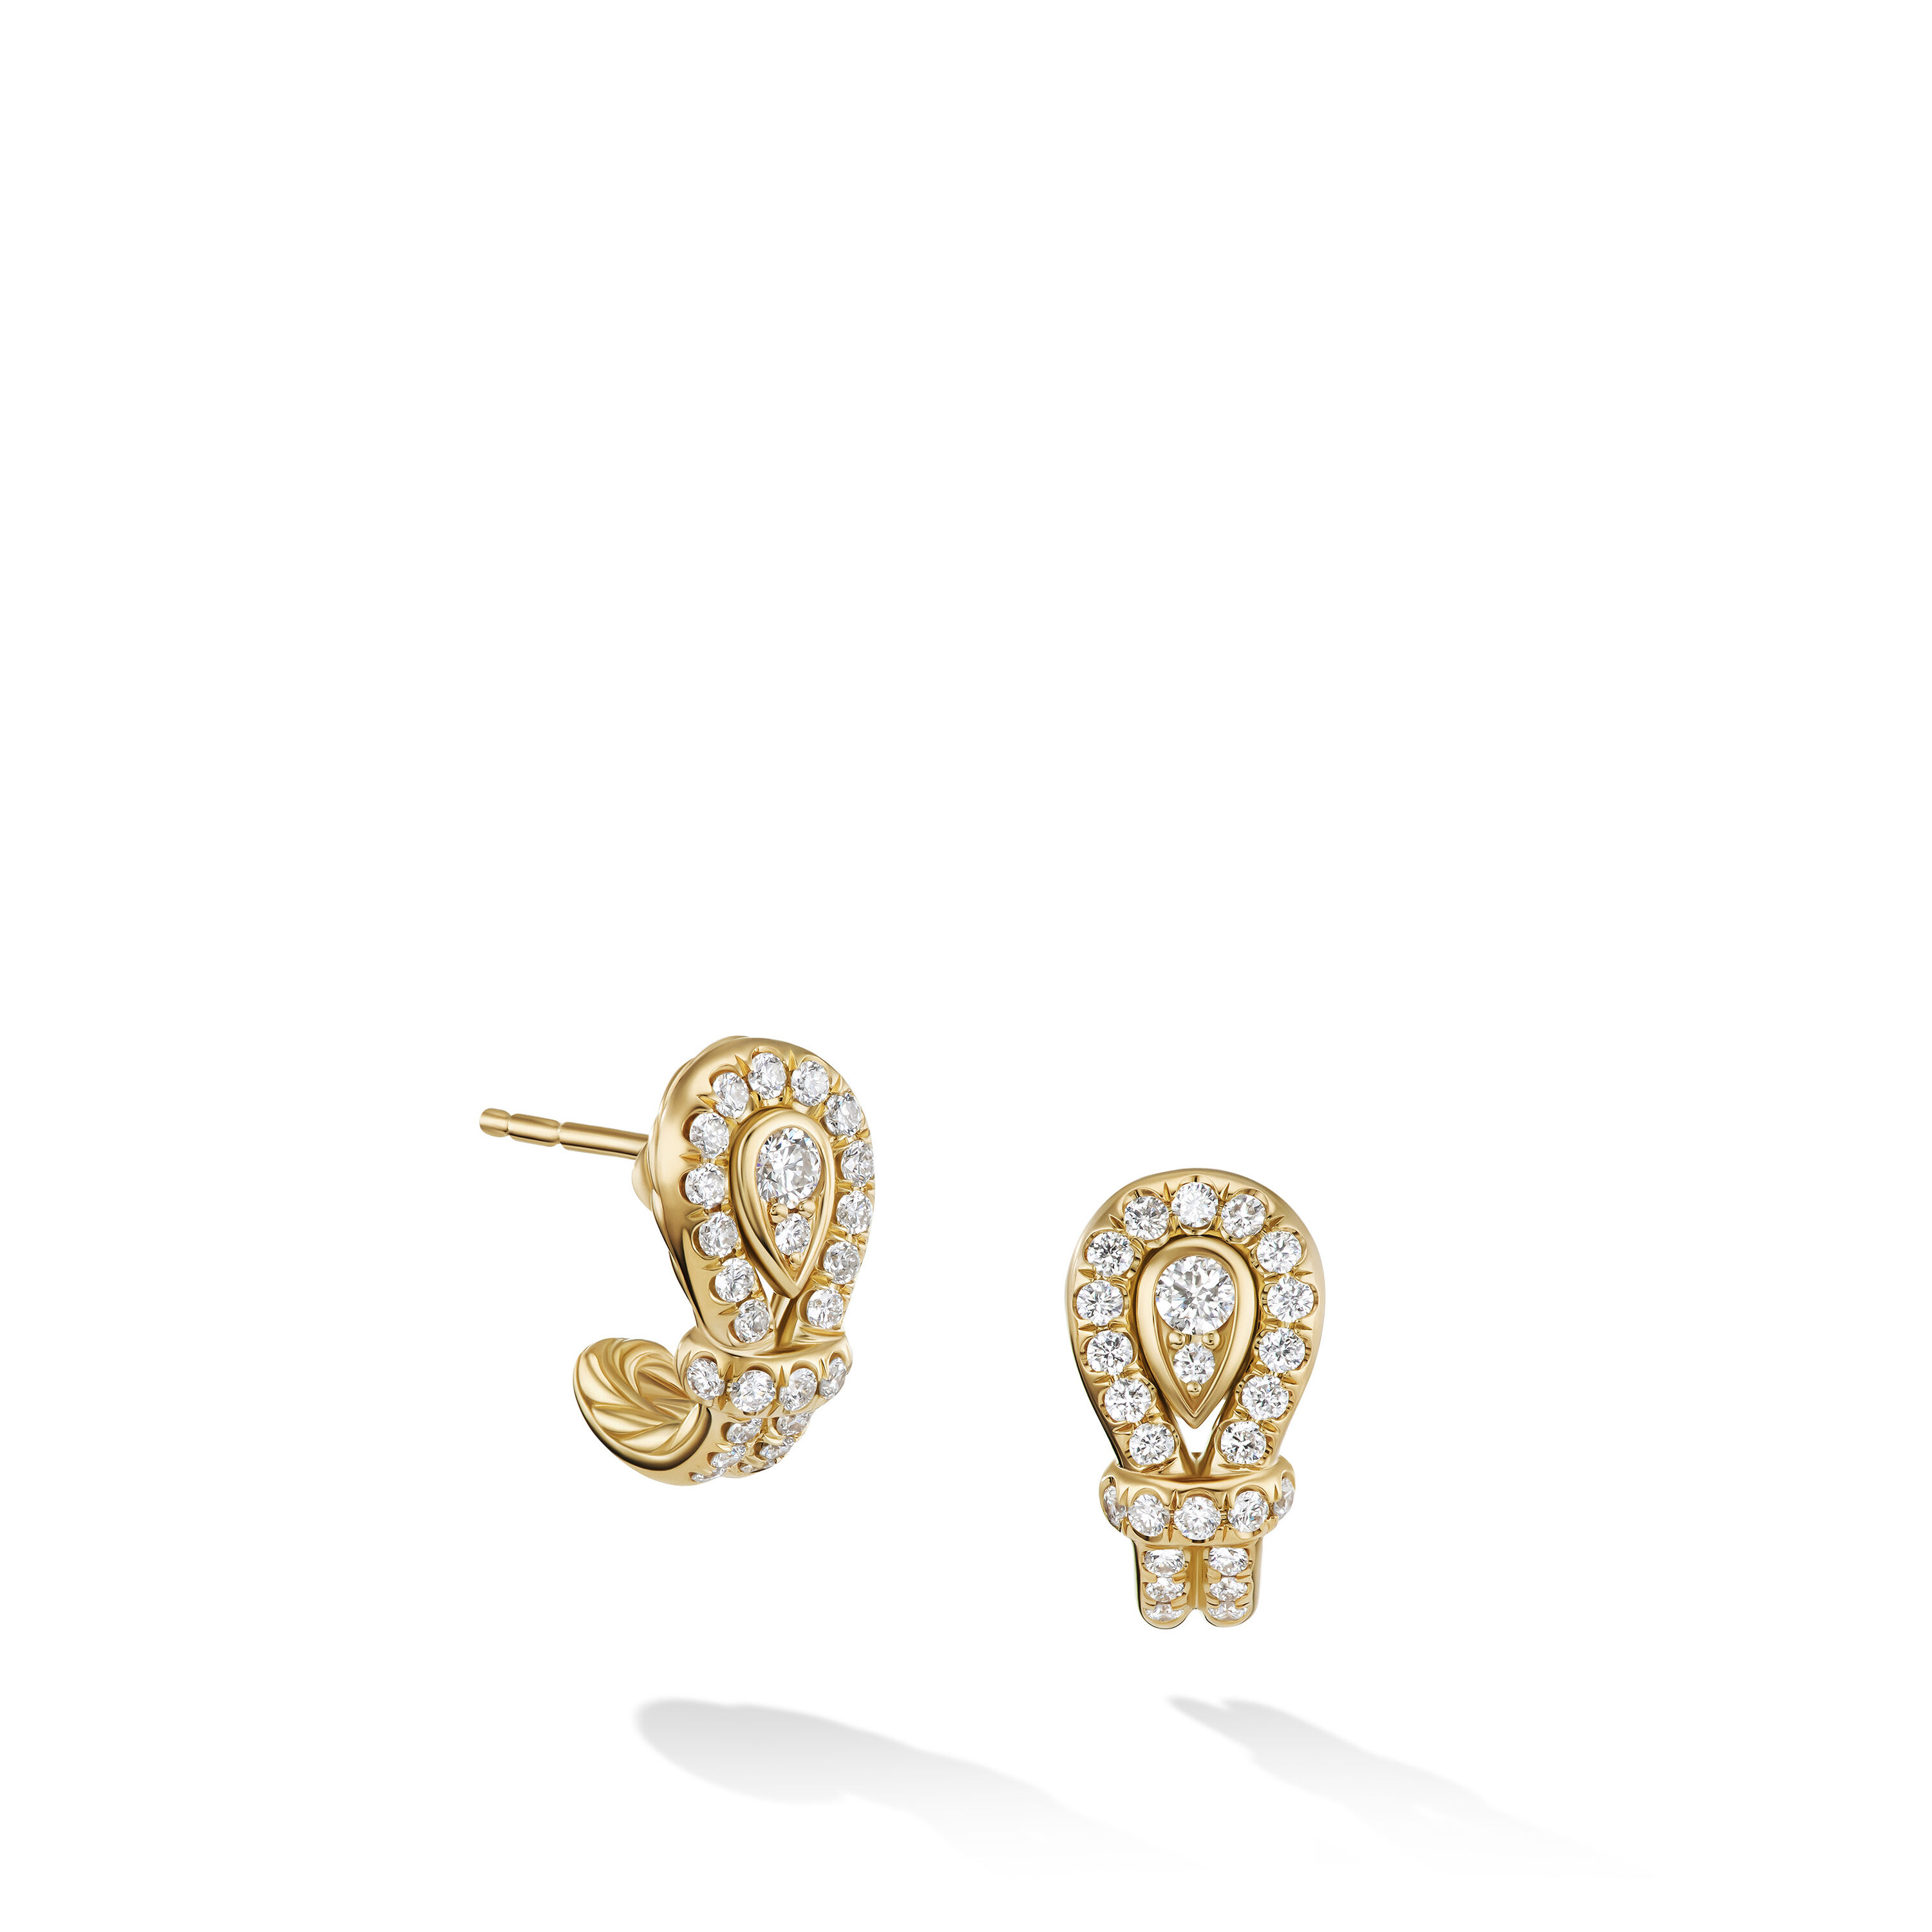 Thoroughbred Loop Huggie Hoop Earrings in 18K Yellow Gold with Diamonds, 14.5mm